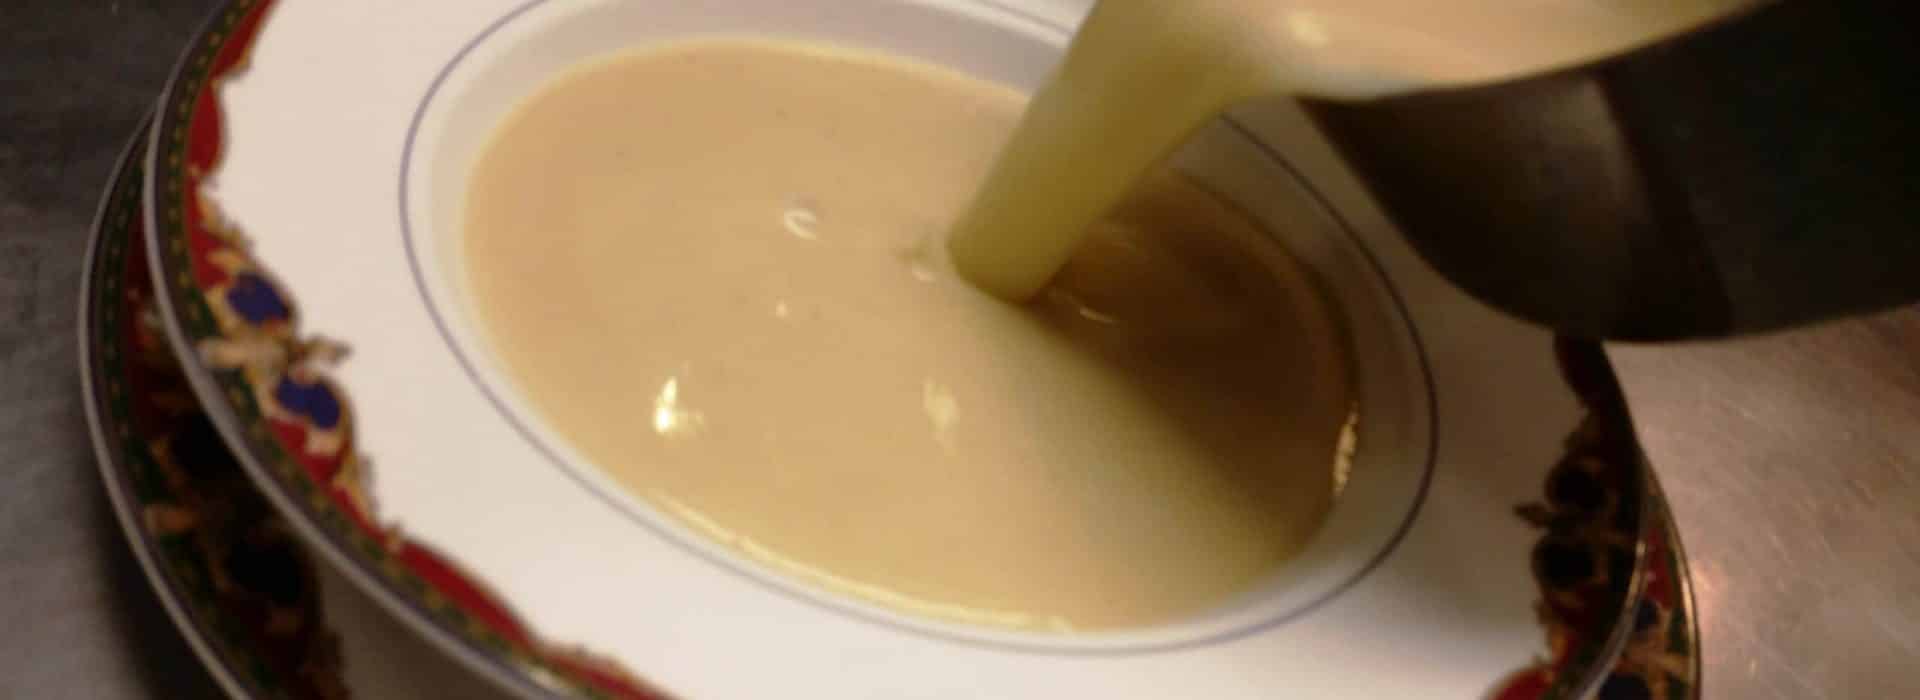 sunchoke bisque soup recipe|sunchoke soup recipes